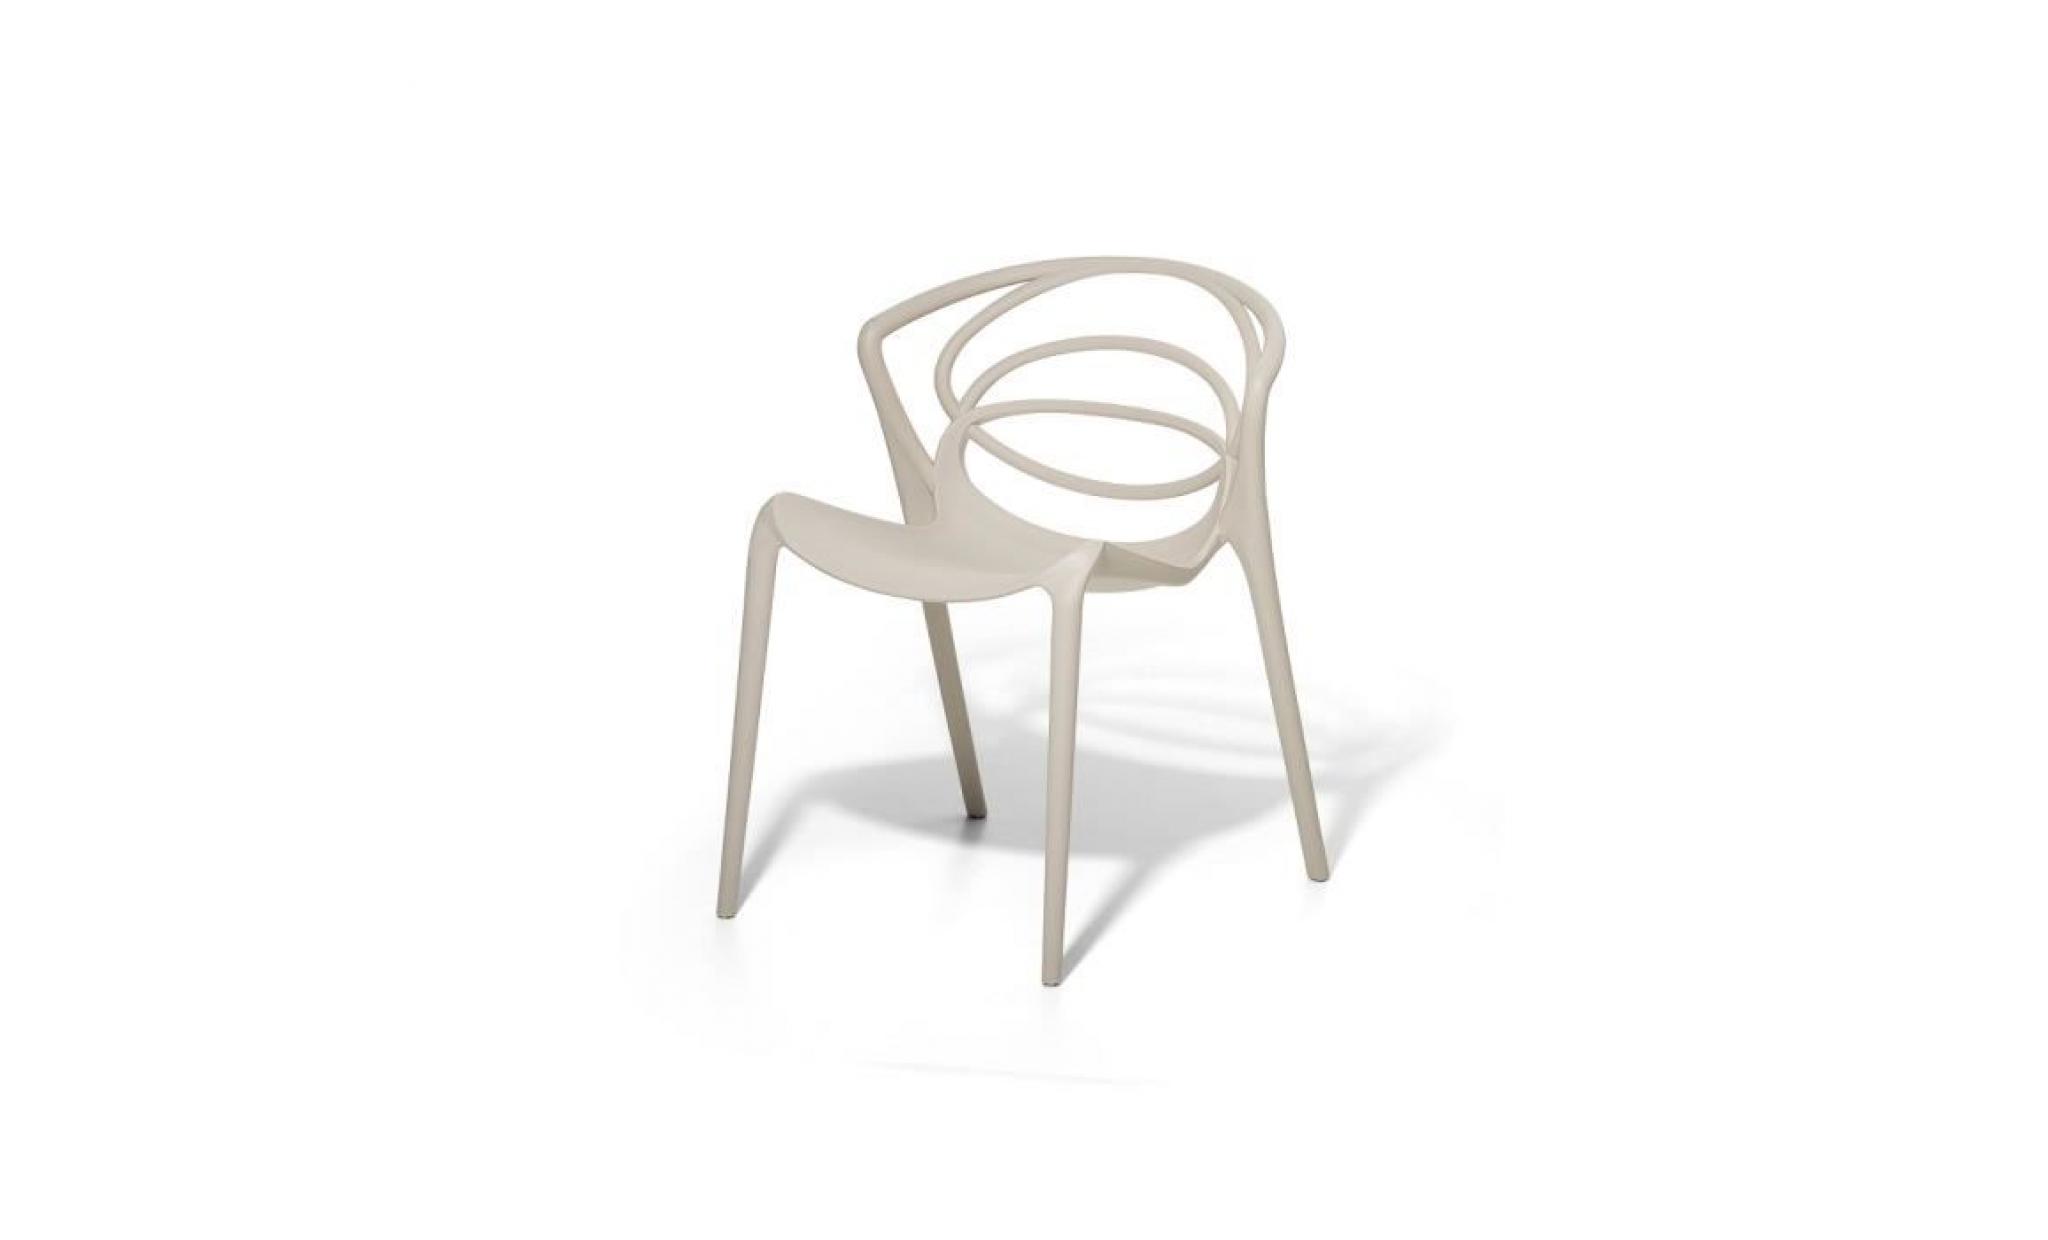 Chaise de jardin design - siège en plastique beige - Bend pas cher